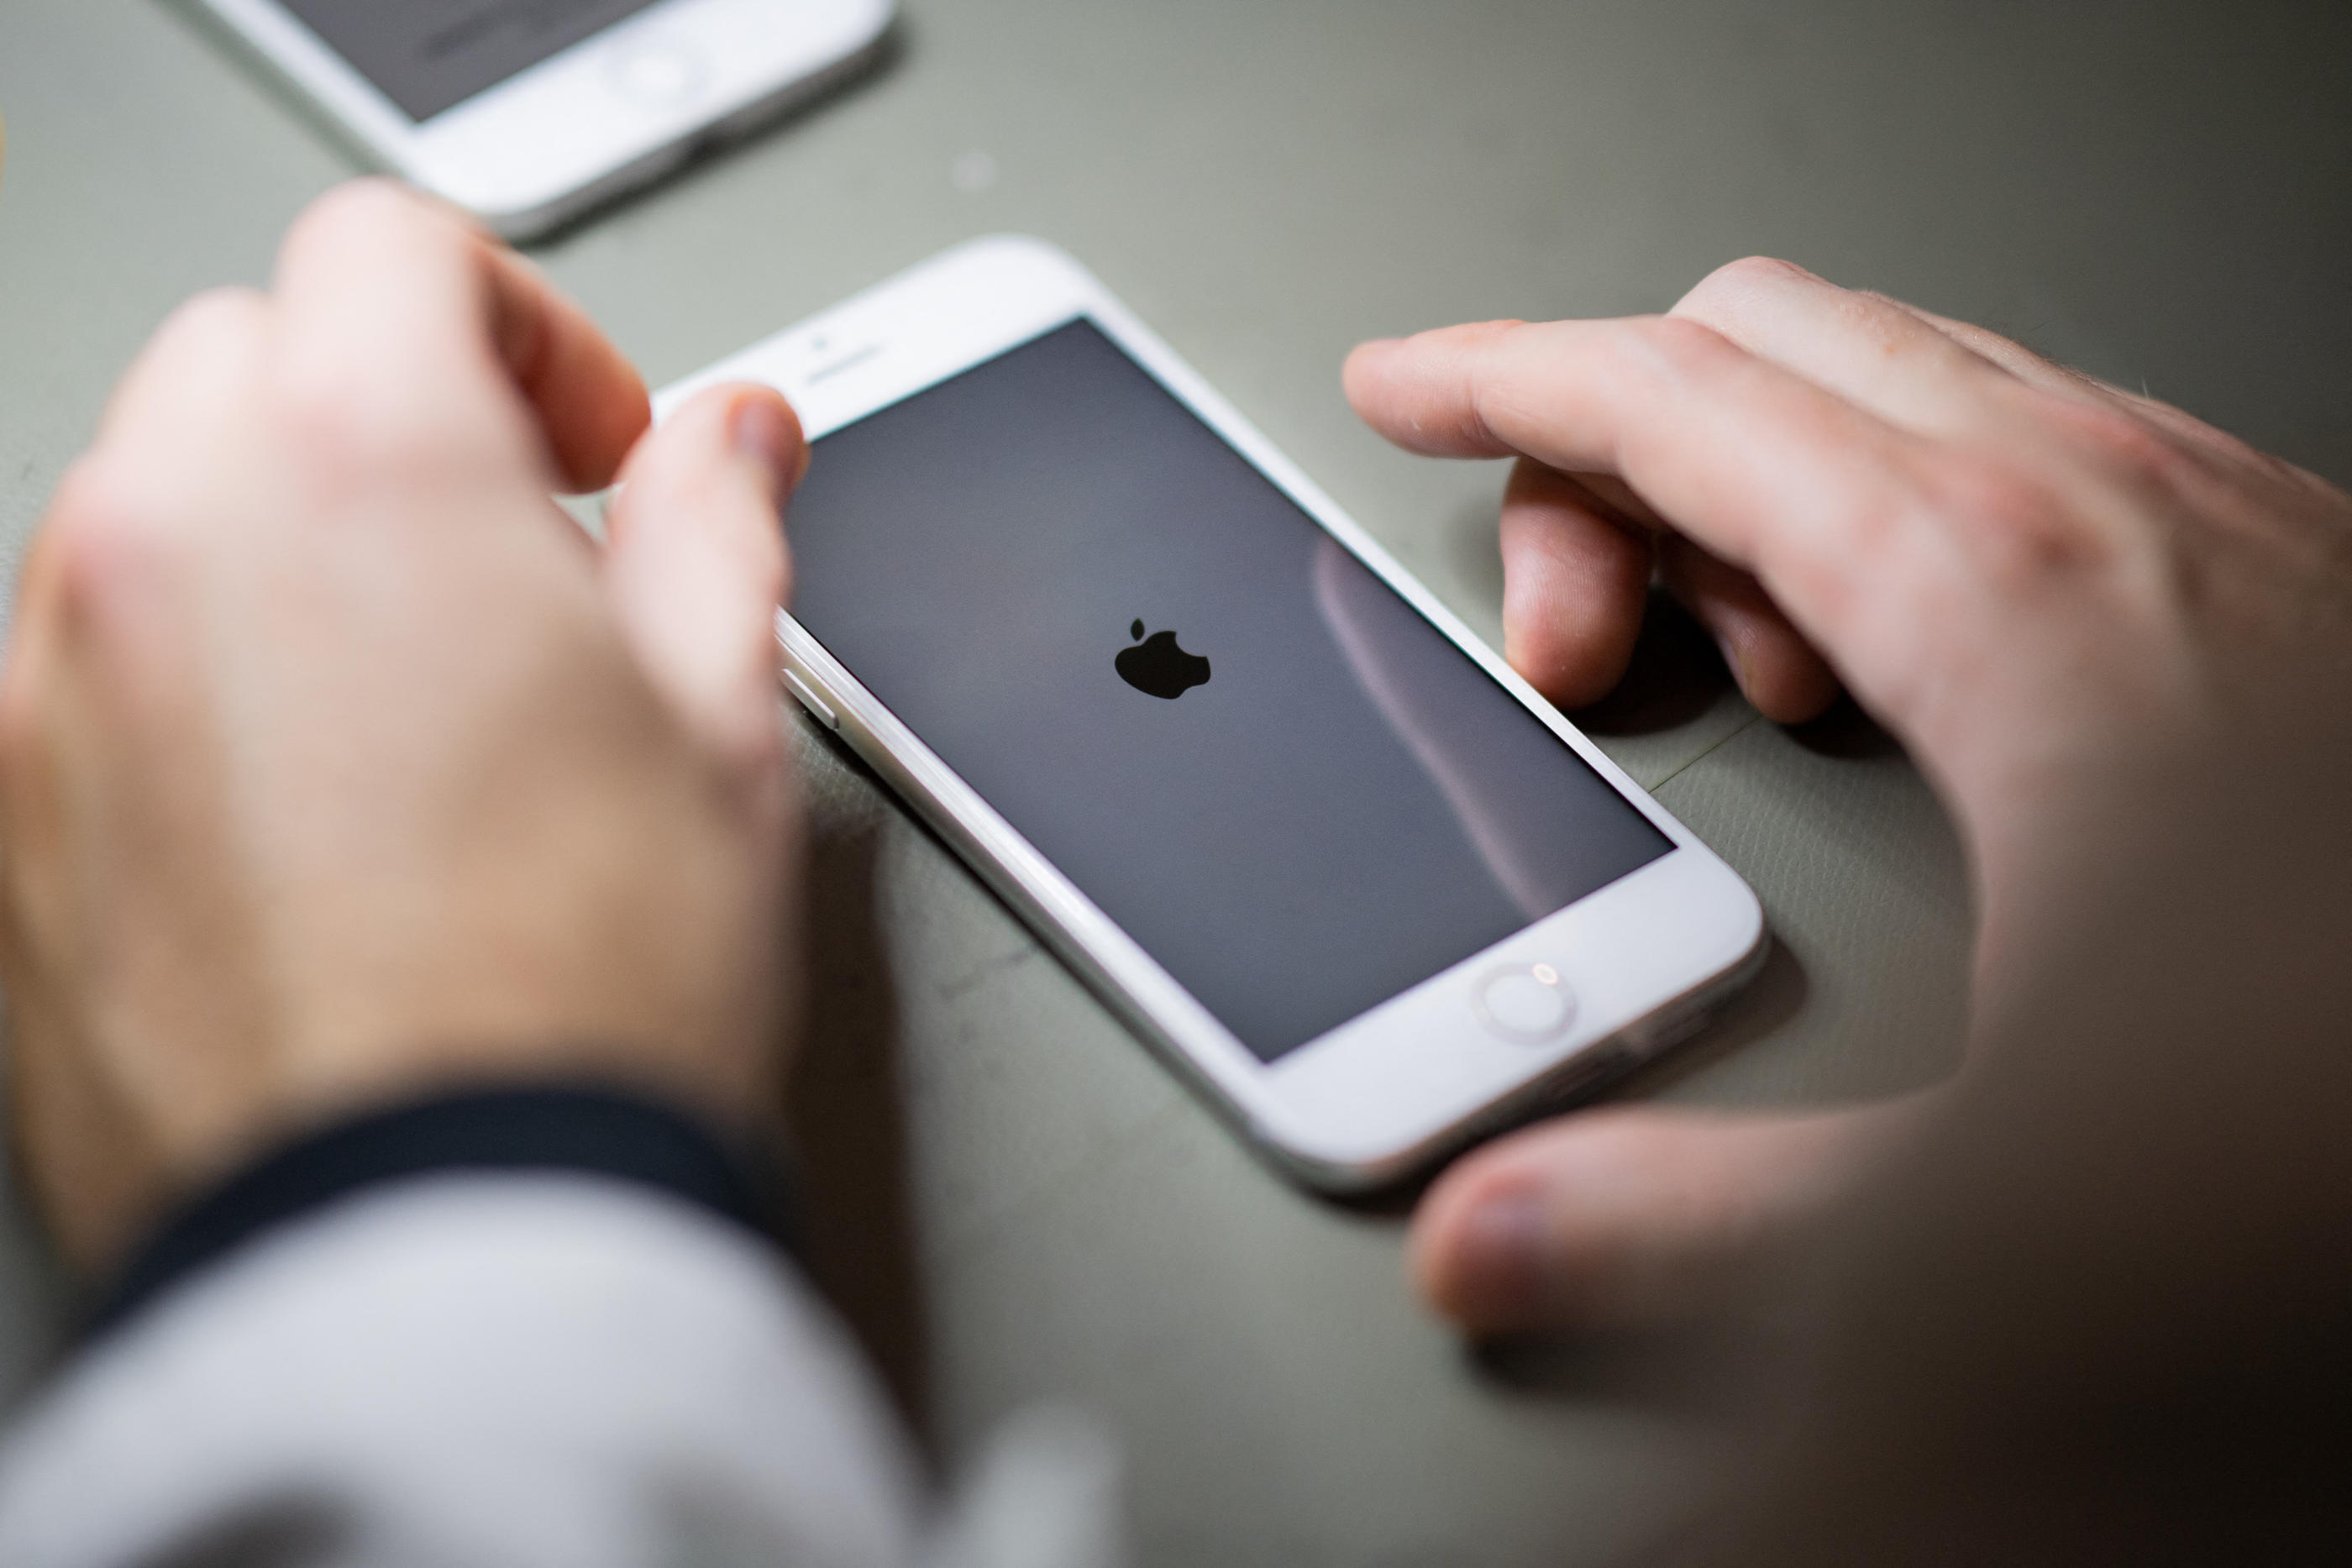 Logiciel espion pour iPhone iOS - Matériel de surveillance numérique